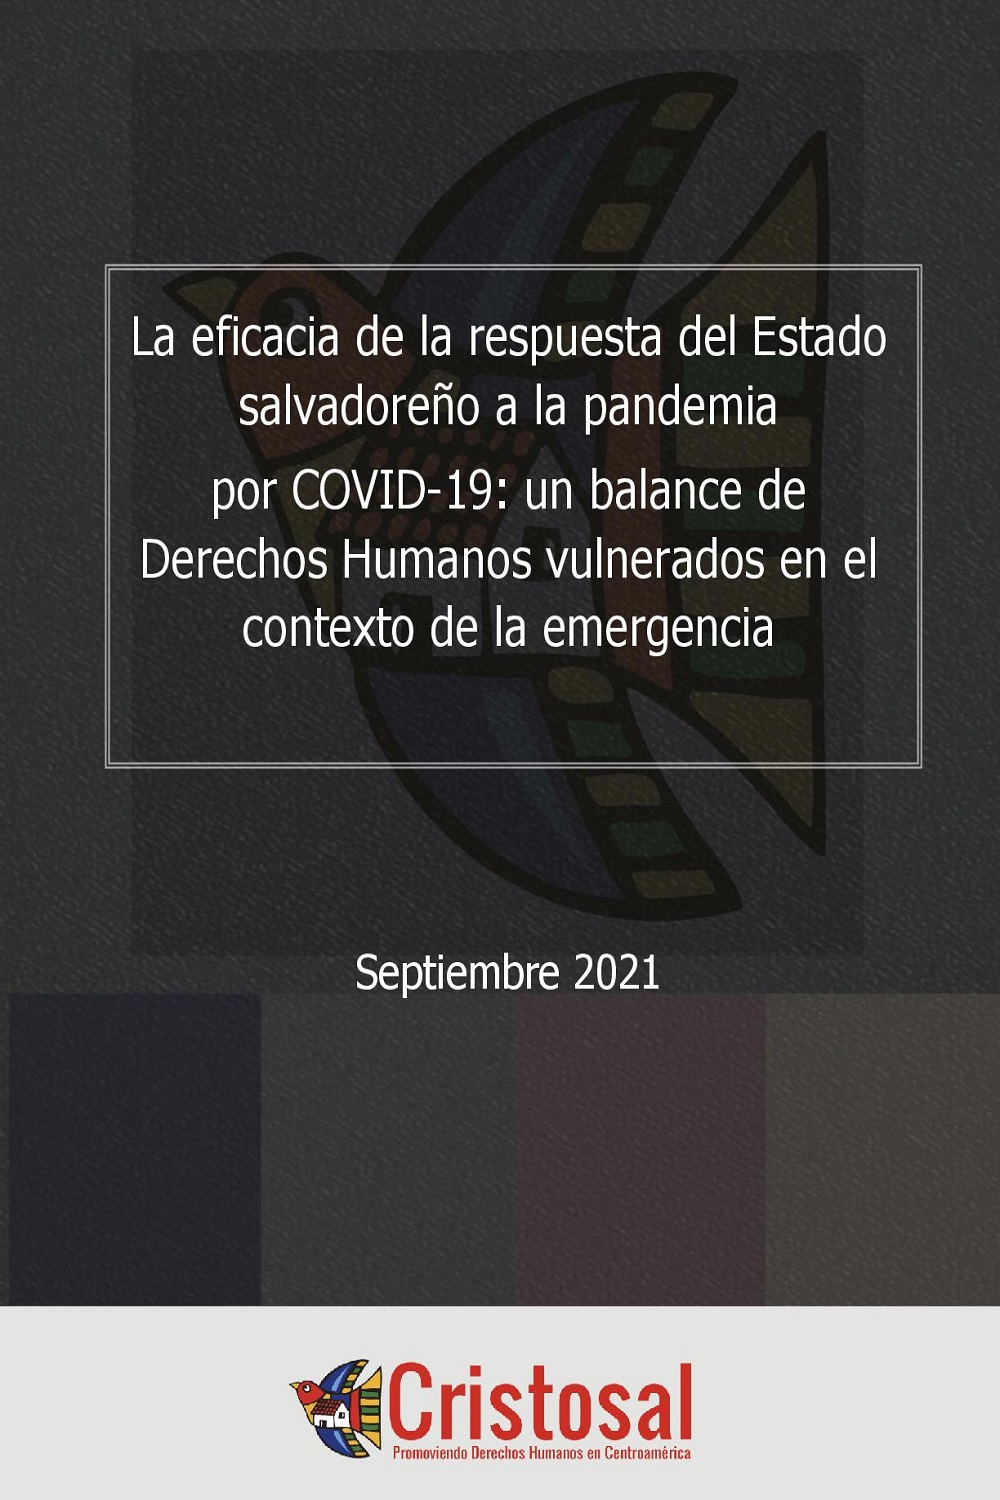 La eficacia de la respuesta del Estado salvadoreño a la pandemia por COVID-19: un balance de Derechos Humanos vulnerados en el contexto de la emergencia